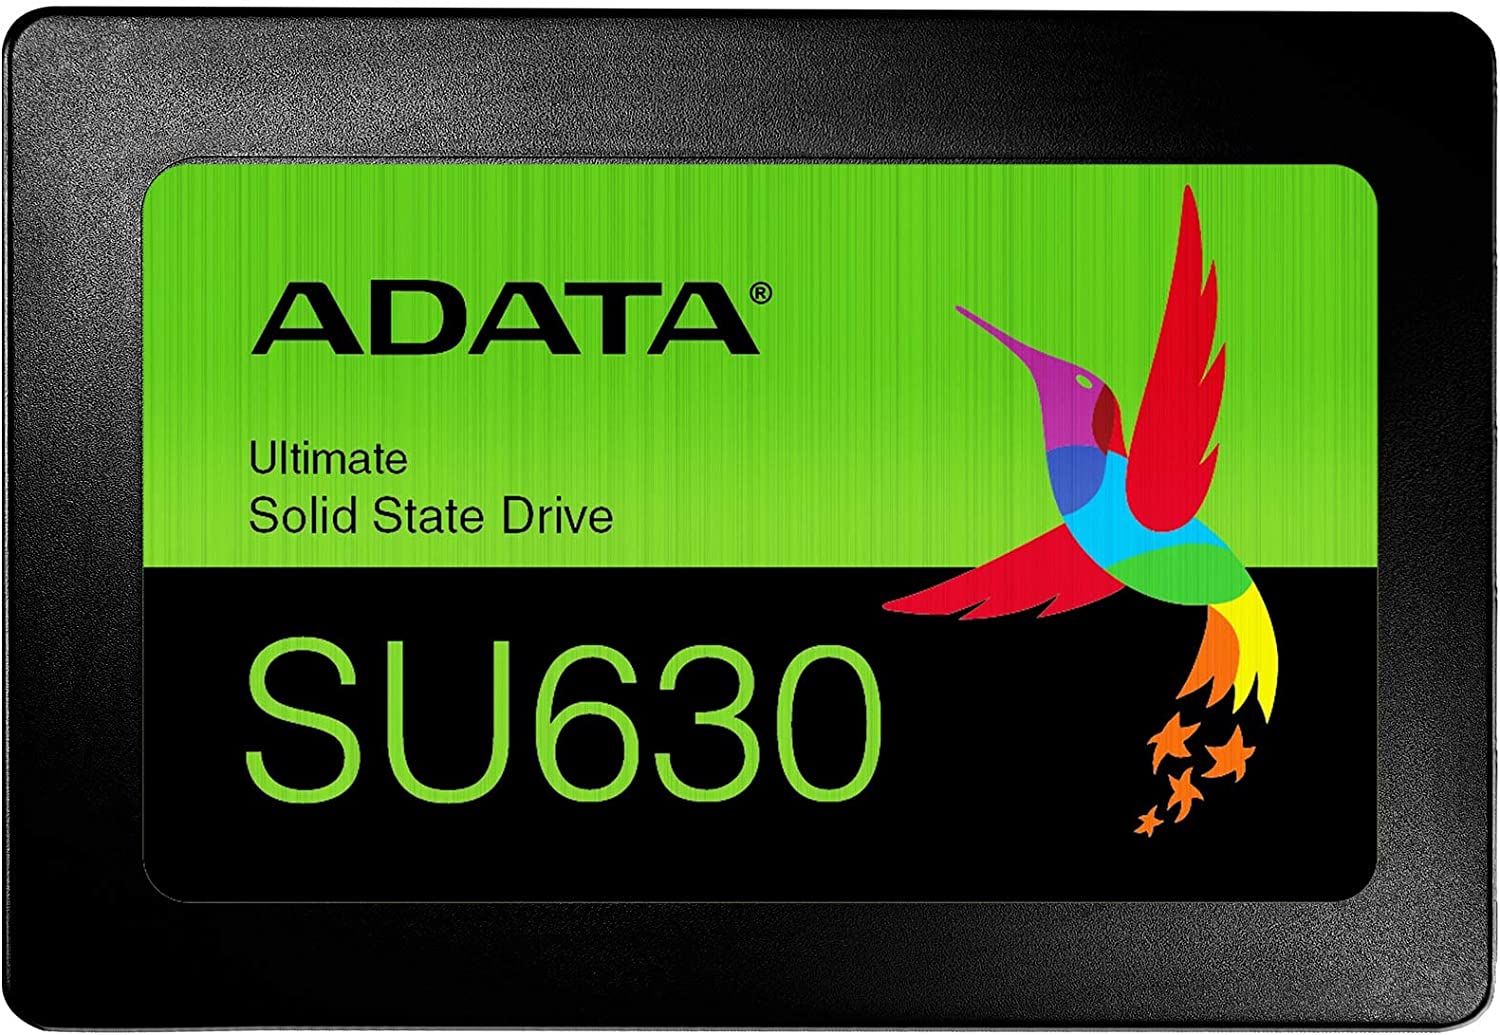 Disco Duro Solido SSD Adata 960Gb SU630, 2.5 para Laptop y Pc, Nuevo, garantia 1 año